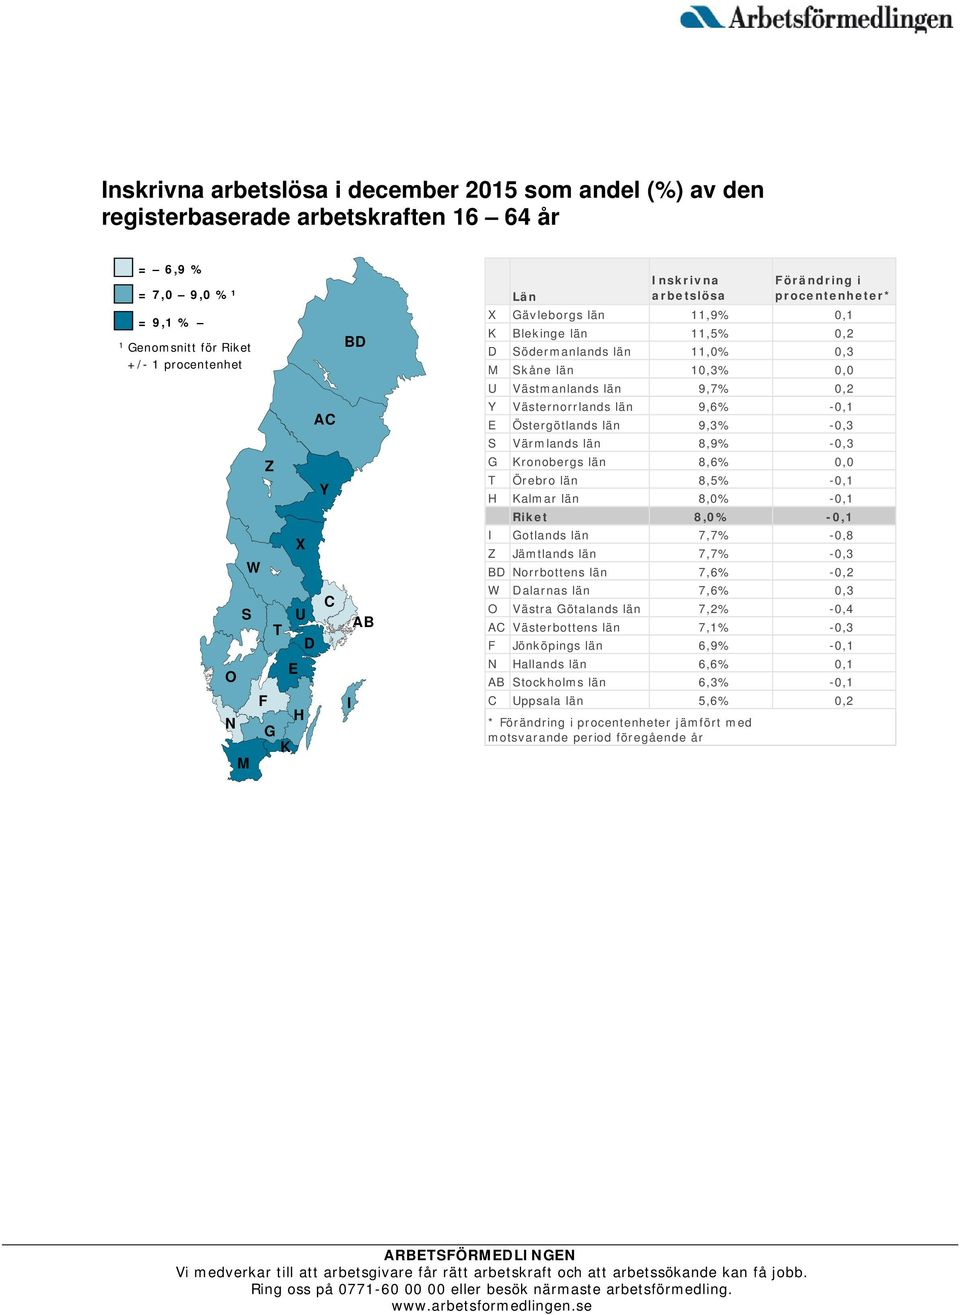 0,2 Y Västernorrlands län 9,6% -0,1 E Östergötlands län 9,3% -0,3 S Värmlands län 8,9% -0,3 G Kronobergs län 8,6% 0,0 T Örebro län 8,5% -0,1 H Kalmar län 8,0% -0,1 Riket 8,0% -0,1 I Gotlands län 7,7%